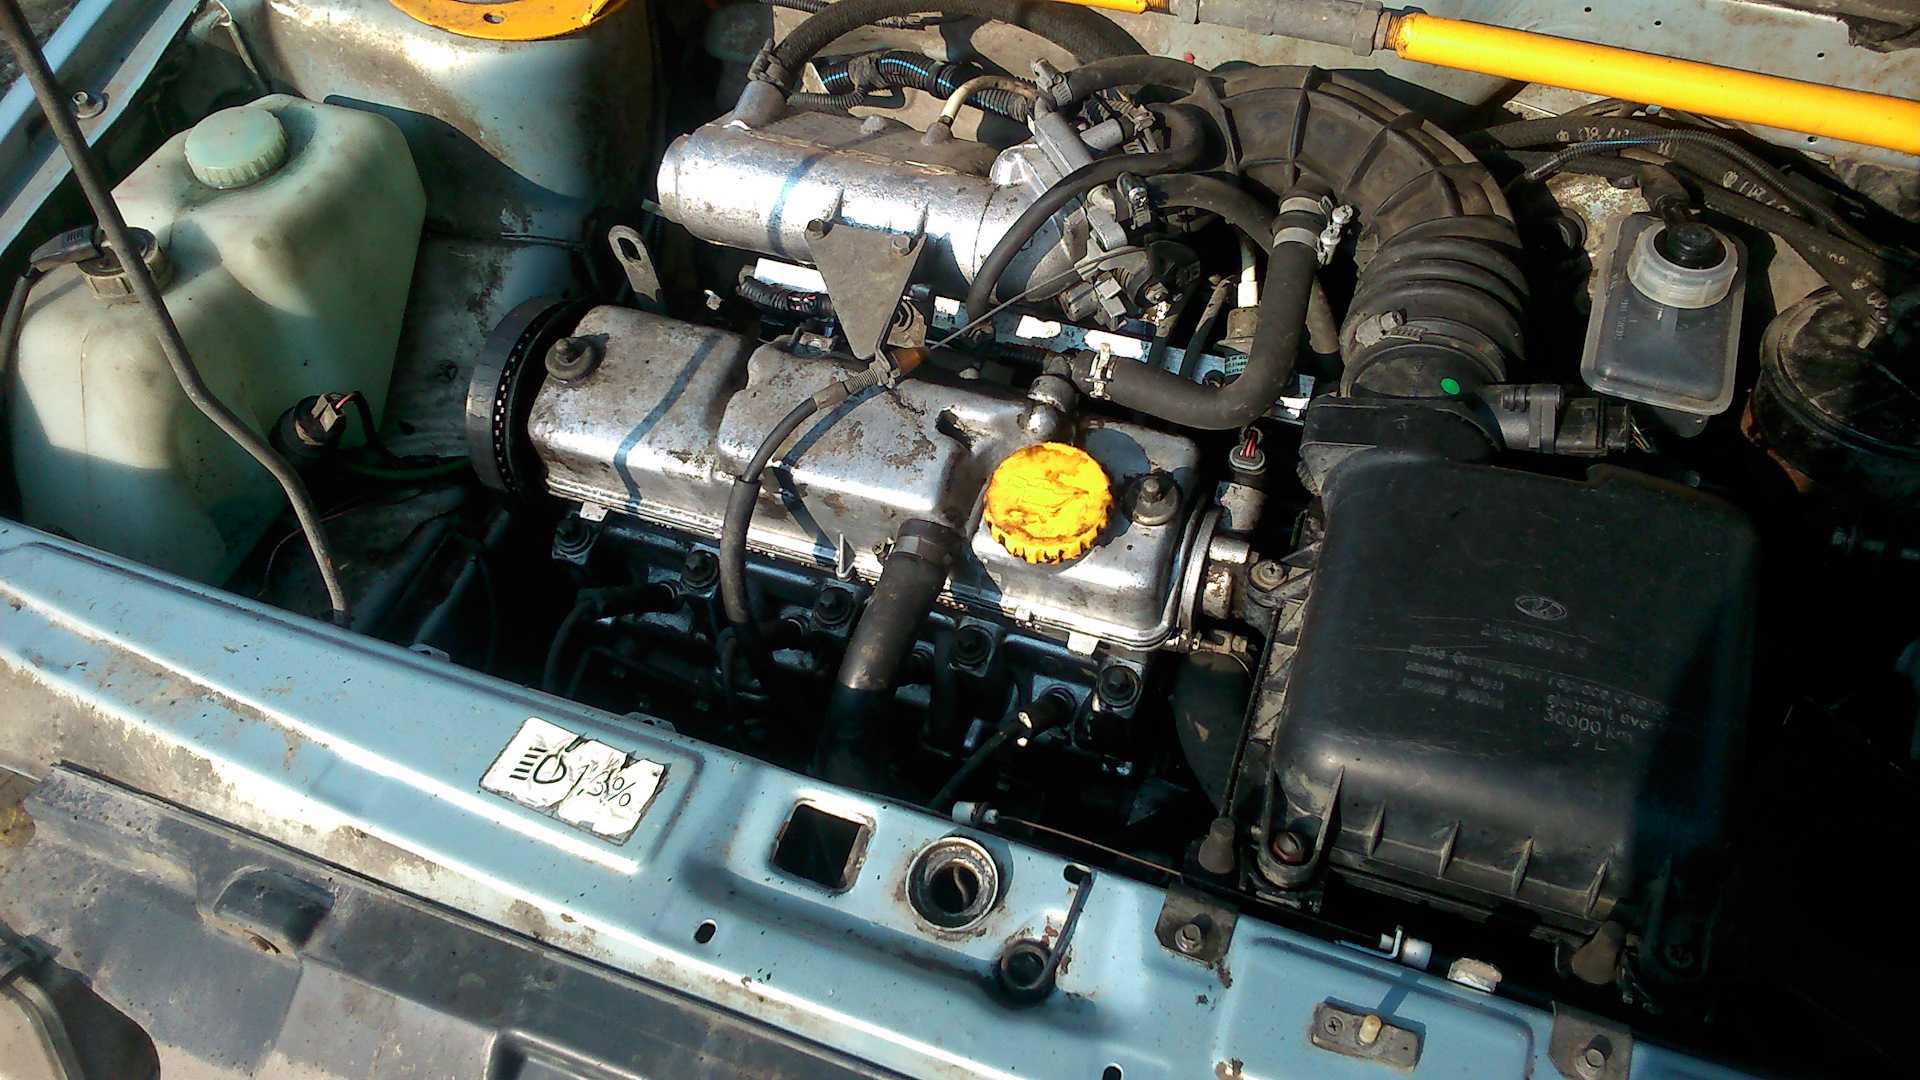 Движок 2115. Мотор 8 клапанный ВАЗ 2115. Двигатель ВАЗ 2115. 8 Клапанный двигатель ВАЗ 2115. Движок ВАЗ 2115.